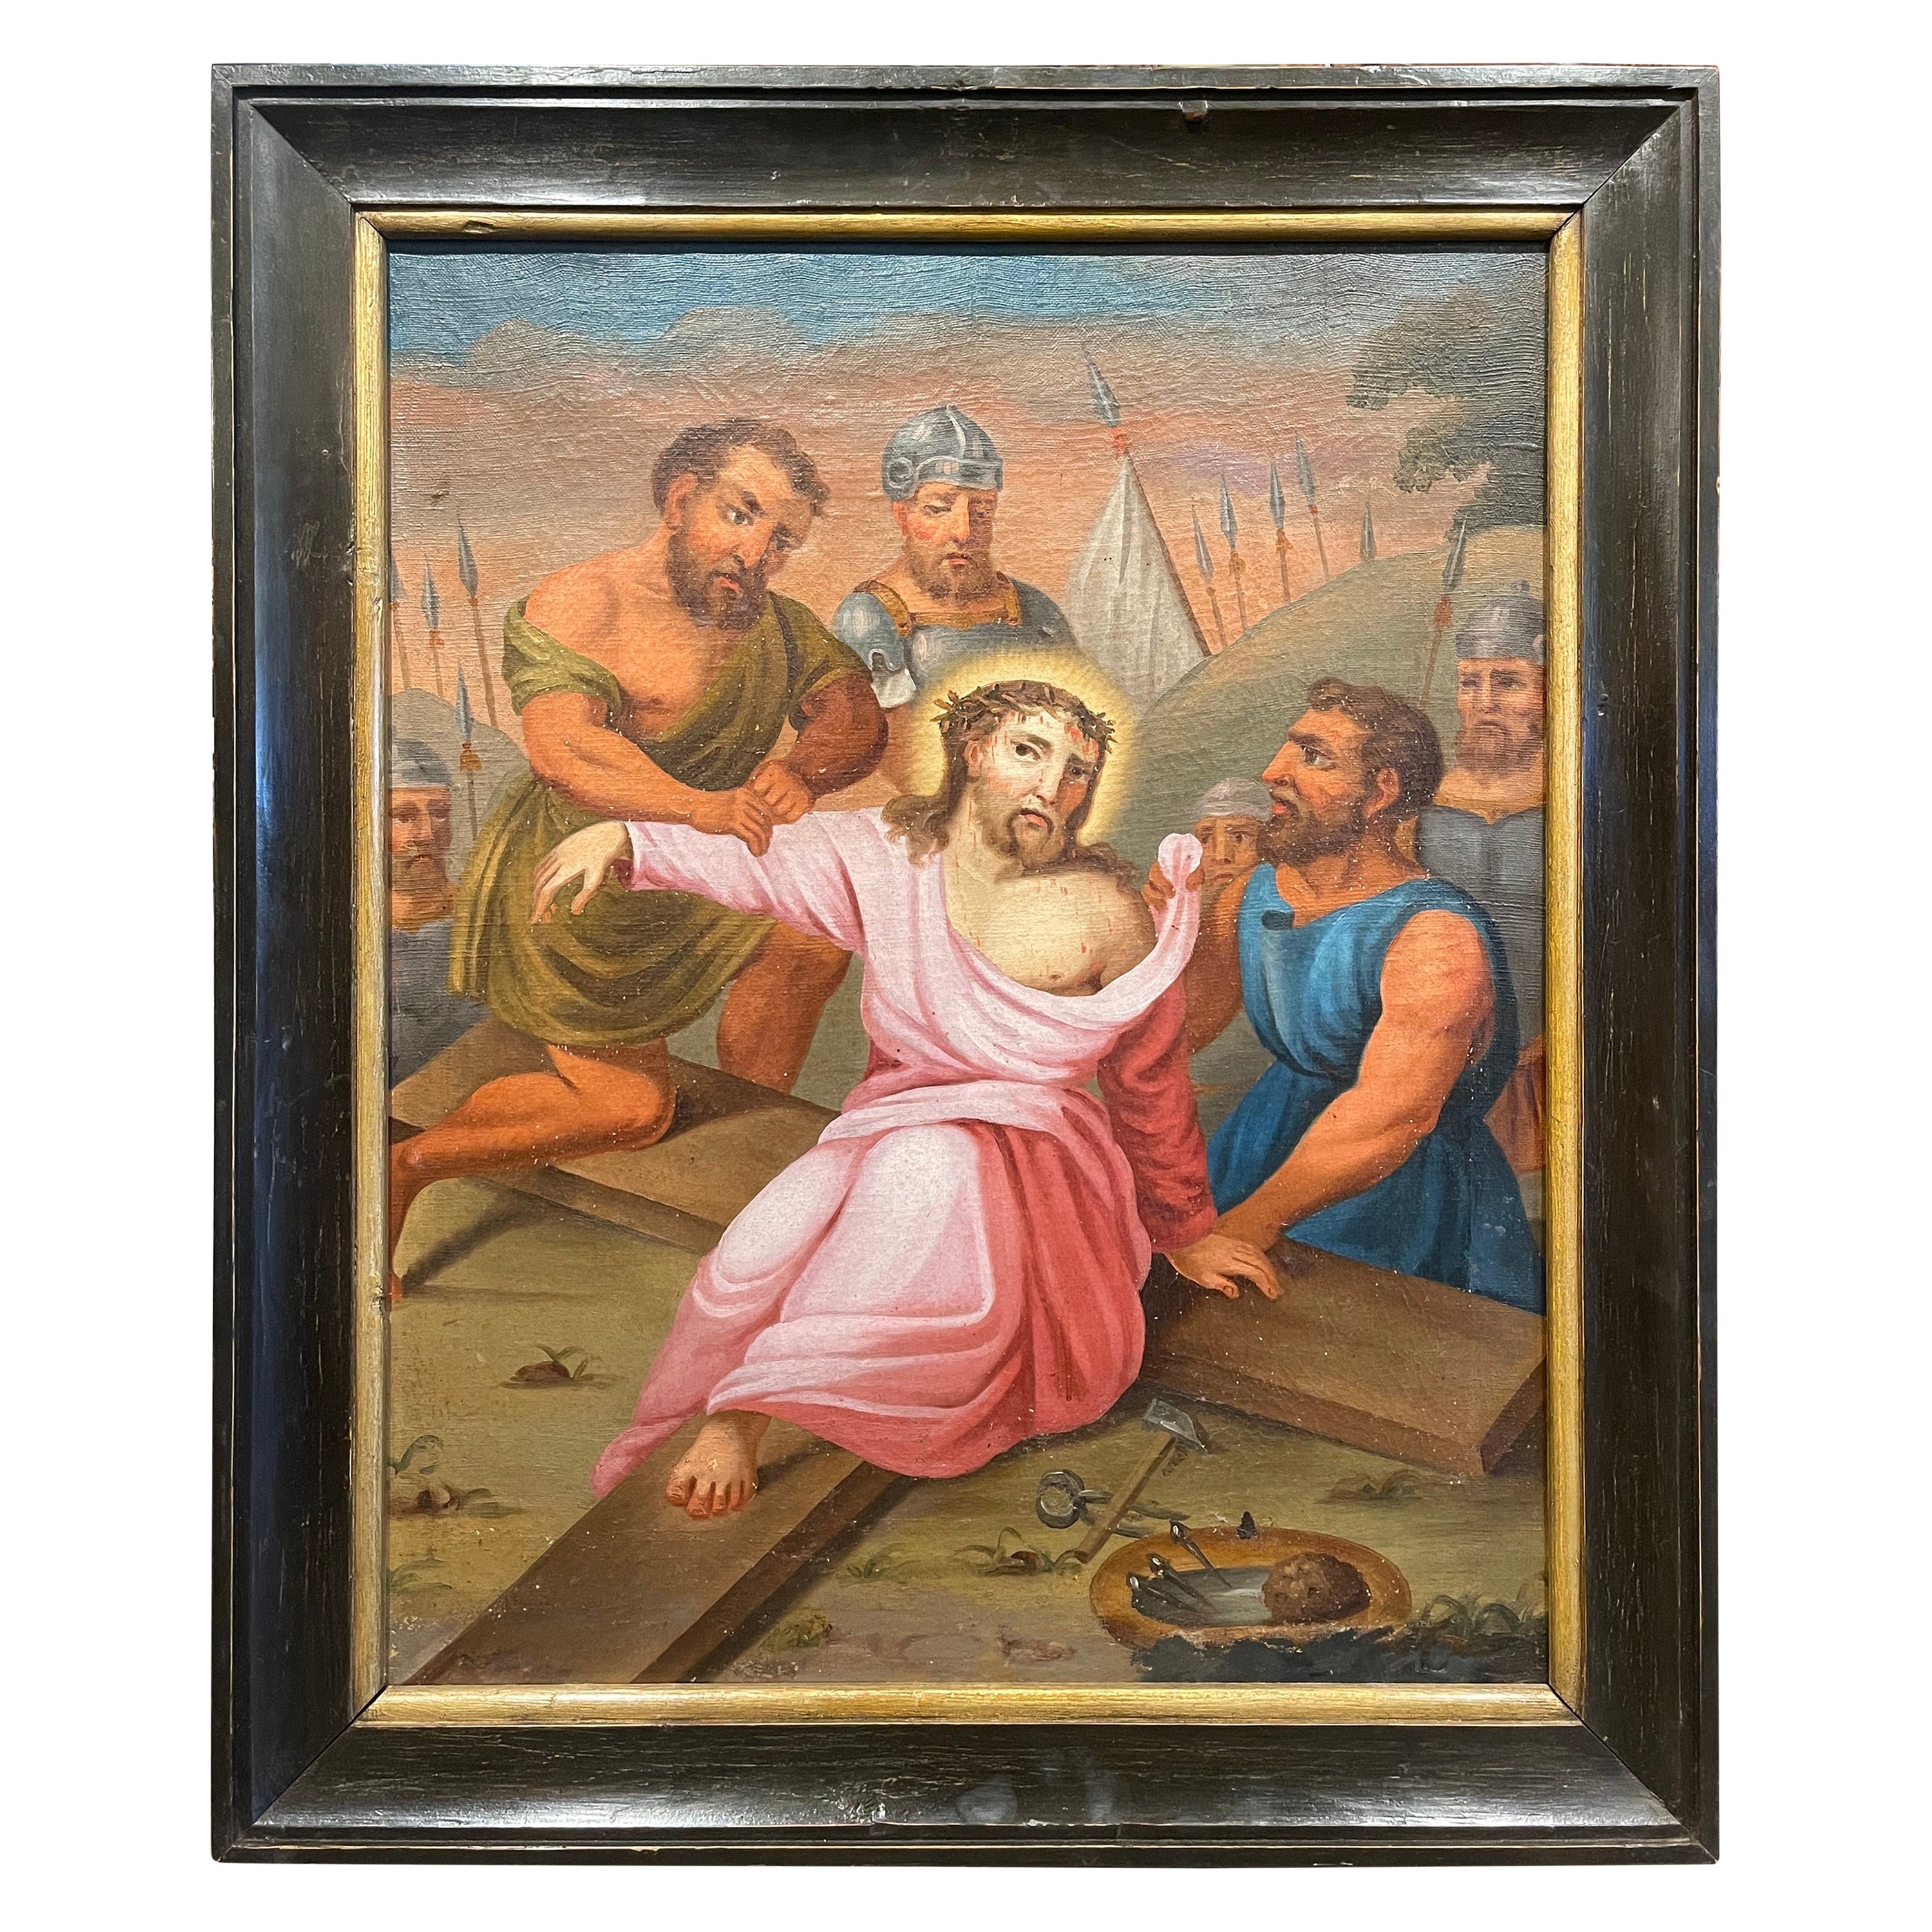 Französisches Ölgemälde auf Leinwand, 18. Jahrhundert, Gemälde „Der zehnte Station des Kreuzes“   